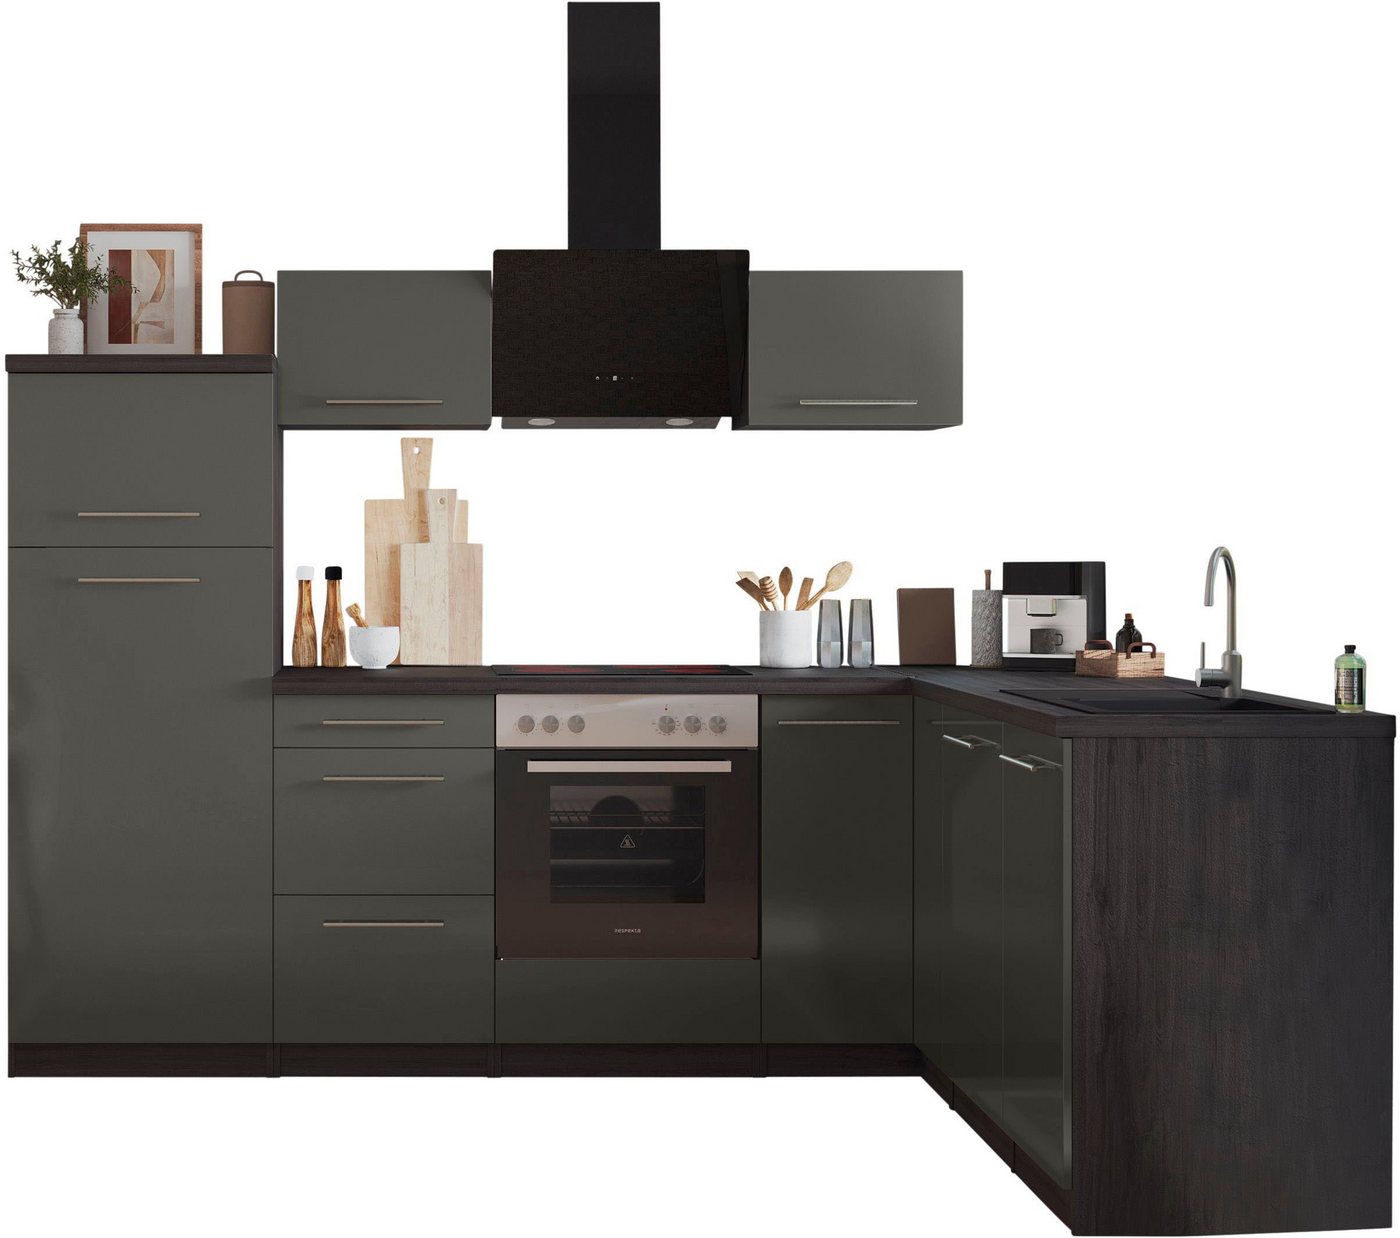 RESPEKTA Küche Amanda, Breite 260 cm, mit Soft-Close, exklusiver Konfiguration für OTTO von RESPEKTA